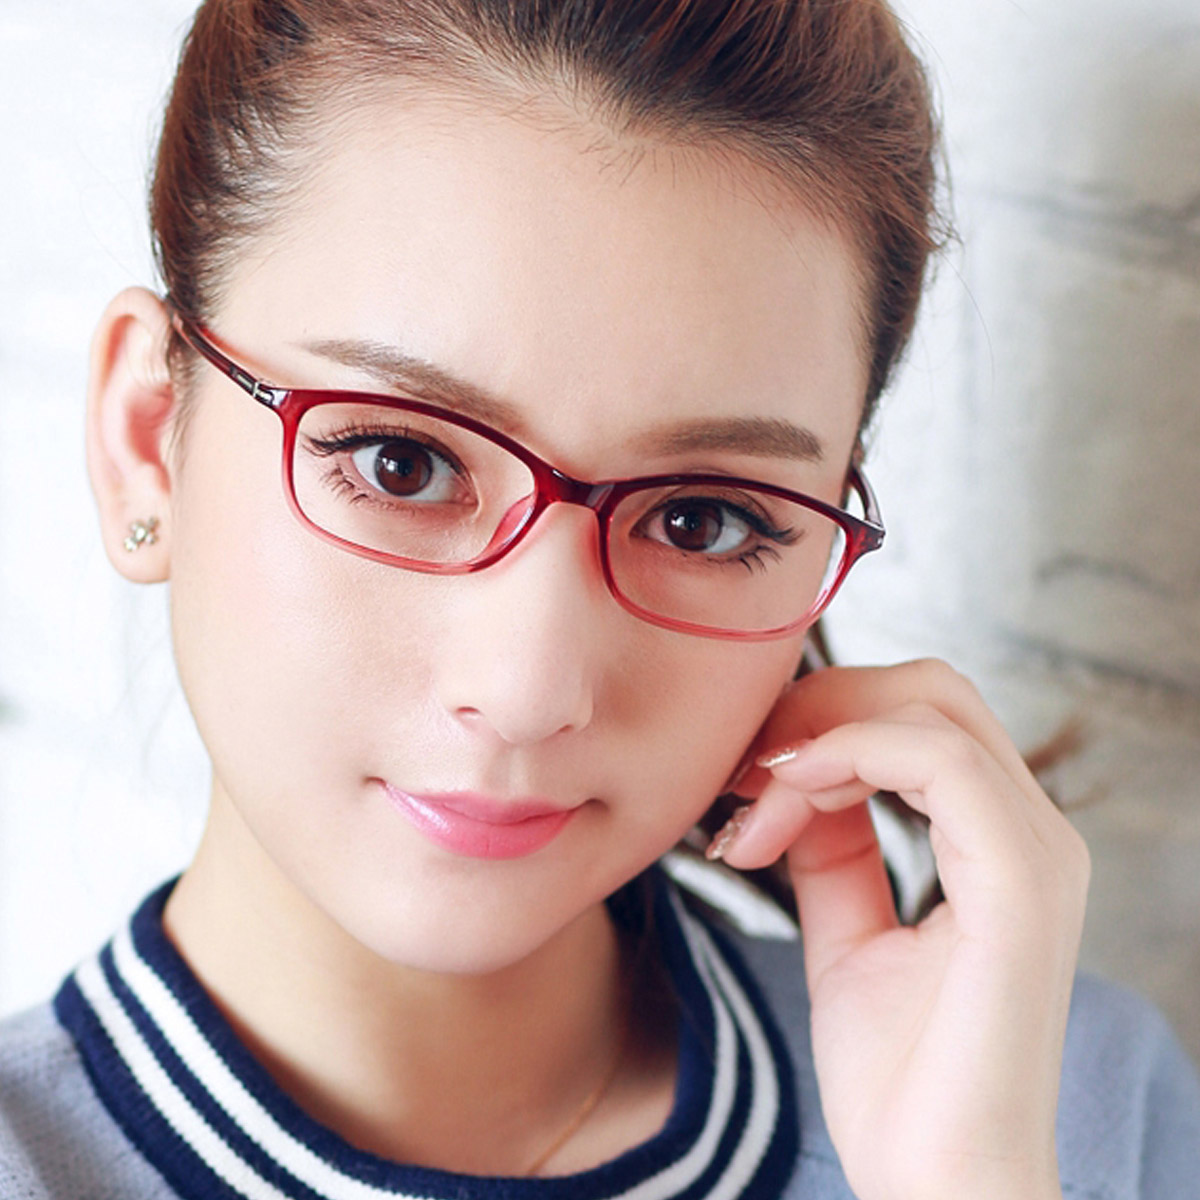 什么近视眼镜框适合脸型小巧的女生,最好有点非主流的感觉的框?